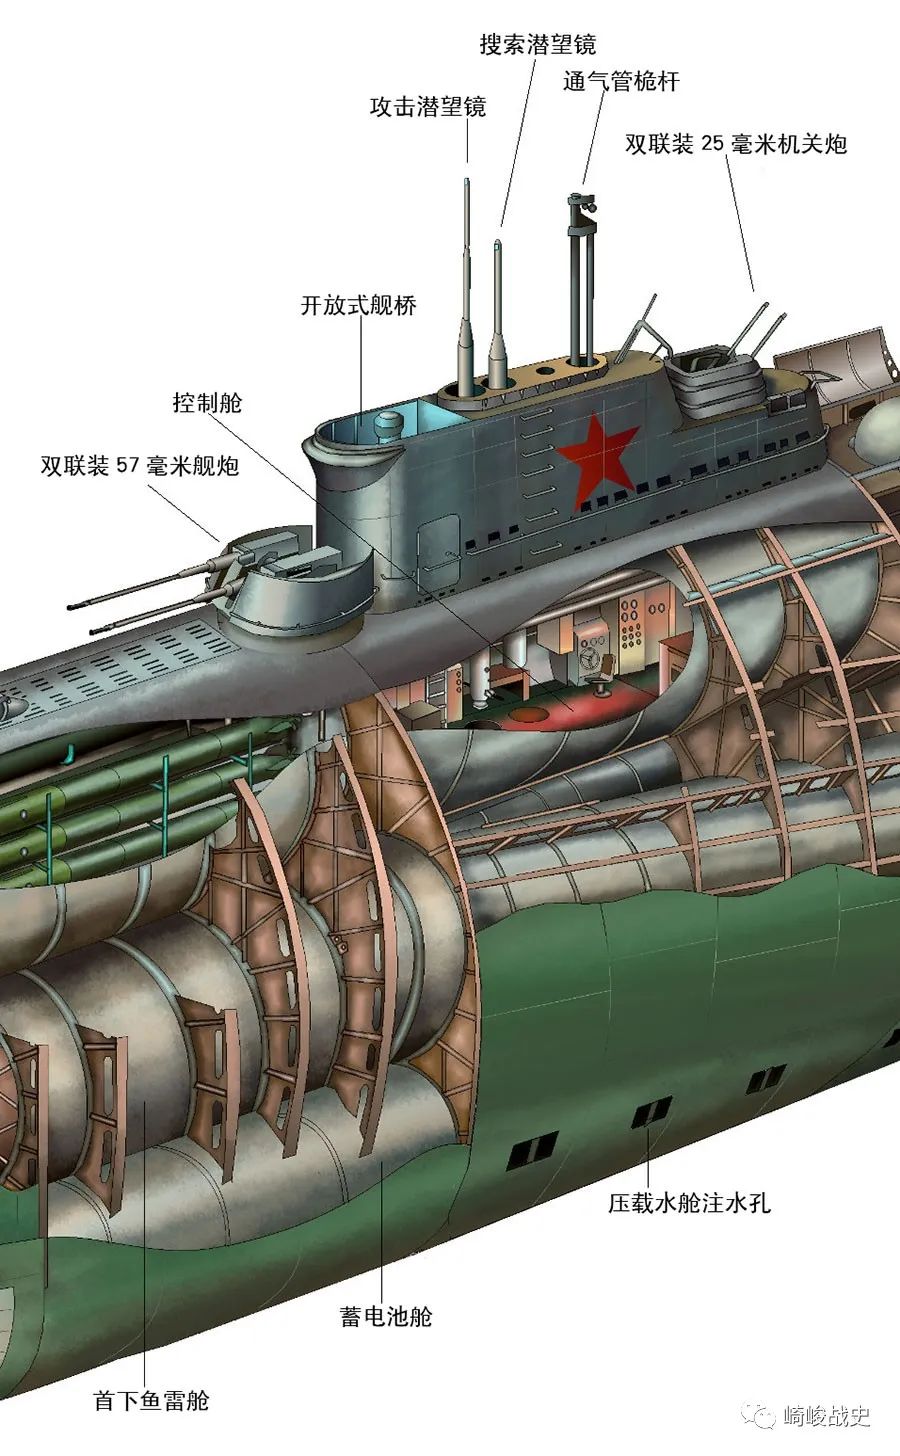 首鱼雷舱分为上下两个独立的舱室,每个舱内配置6具533毫米鱼雷发射管